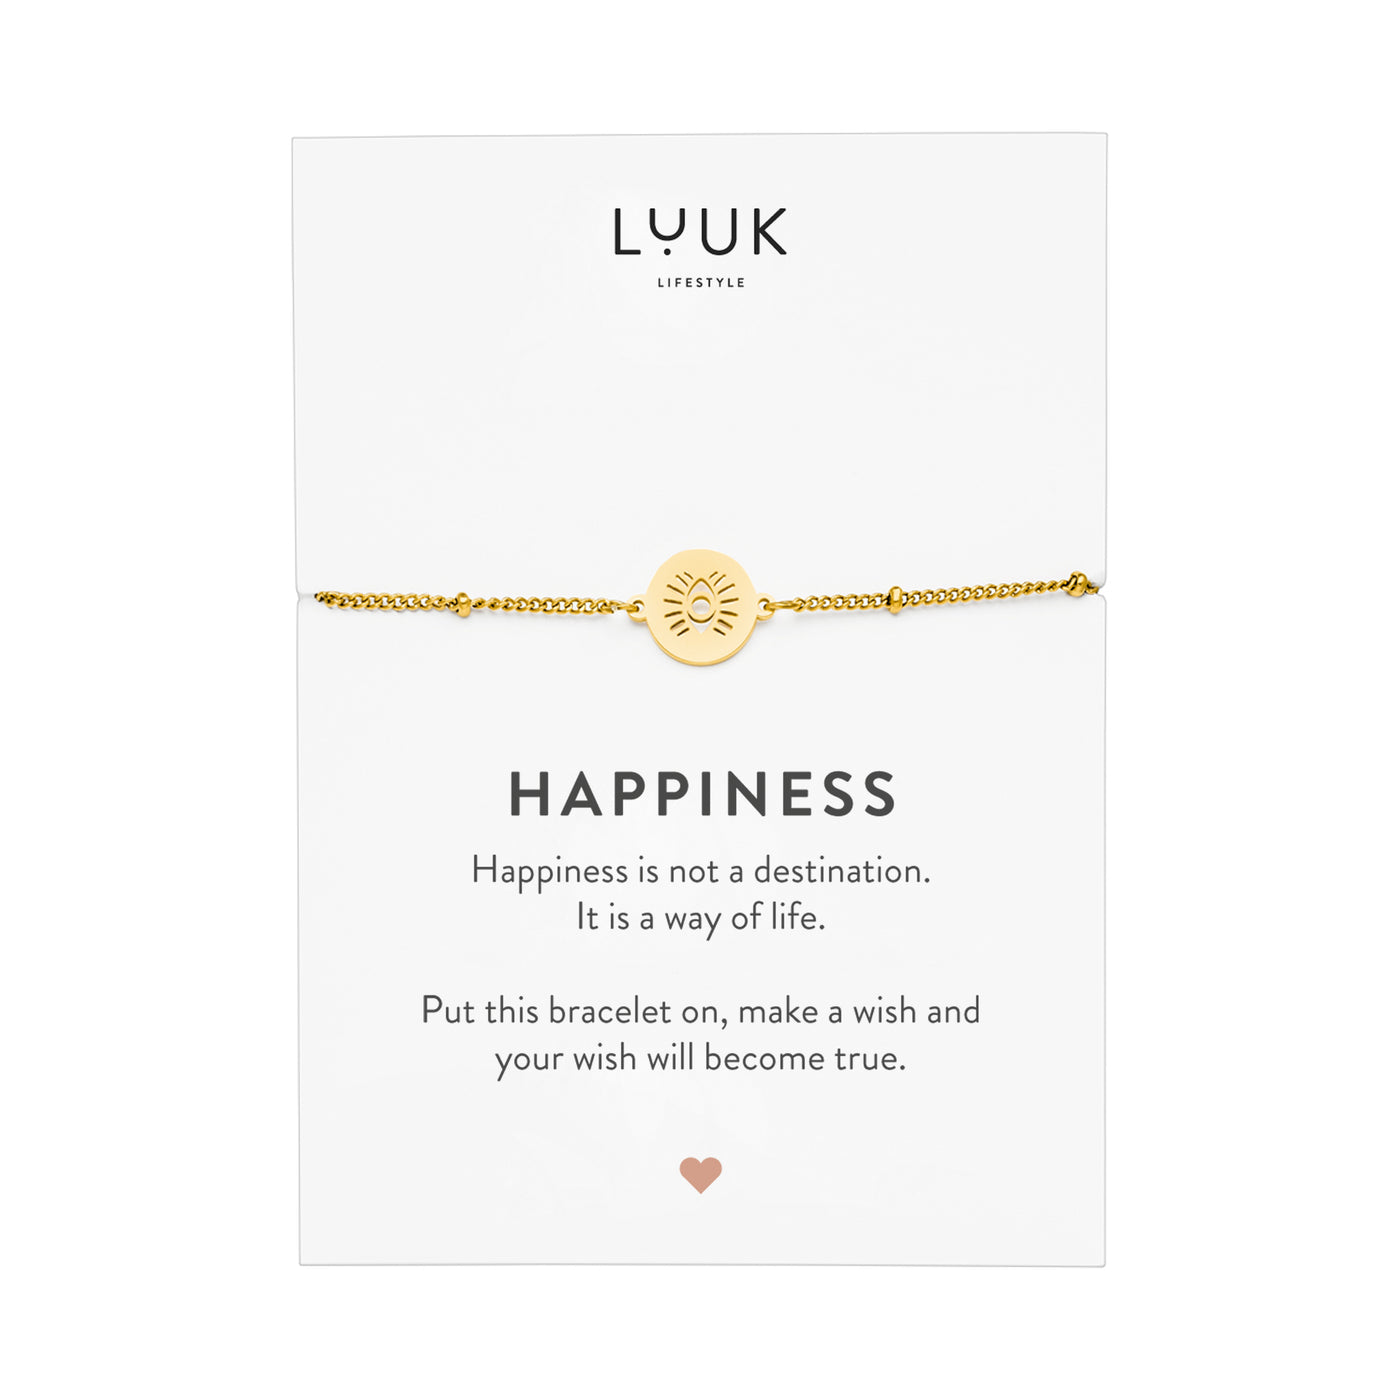 Gold Armband mit Buddha Auge Anhänger auf Happiness Spruchkarte von der Brand Luuk Lifestyle 